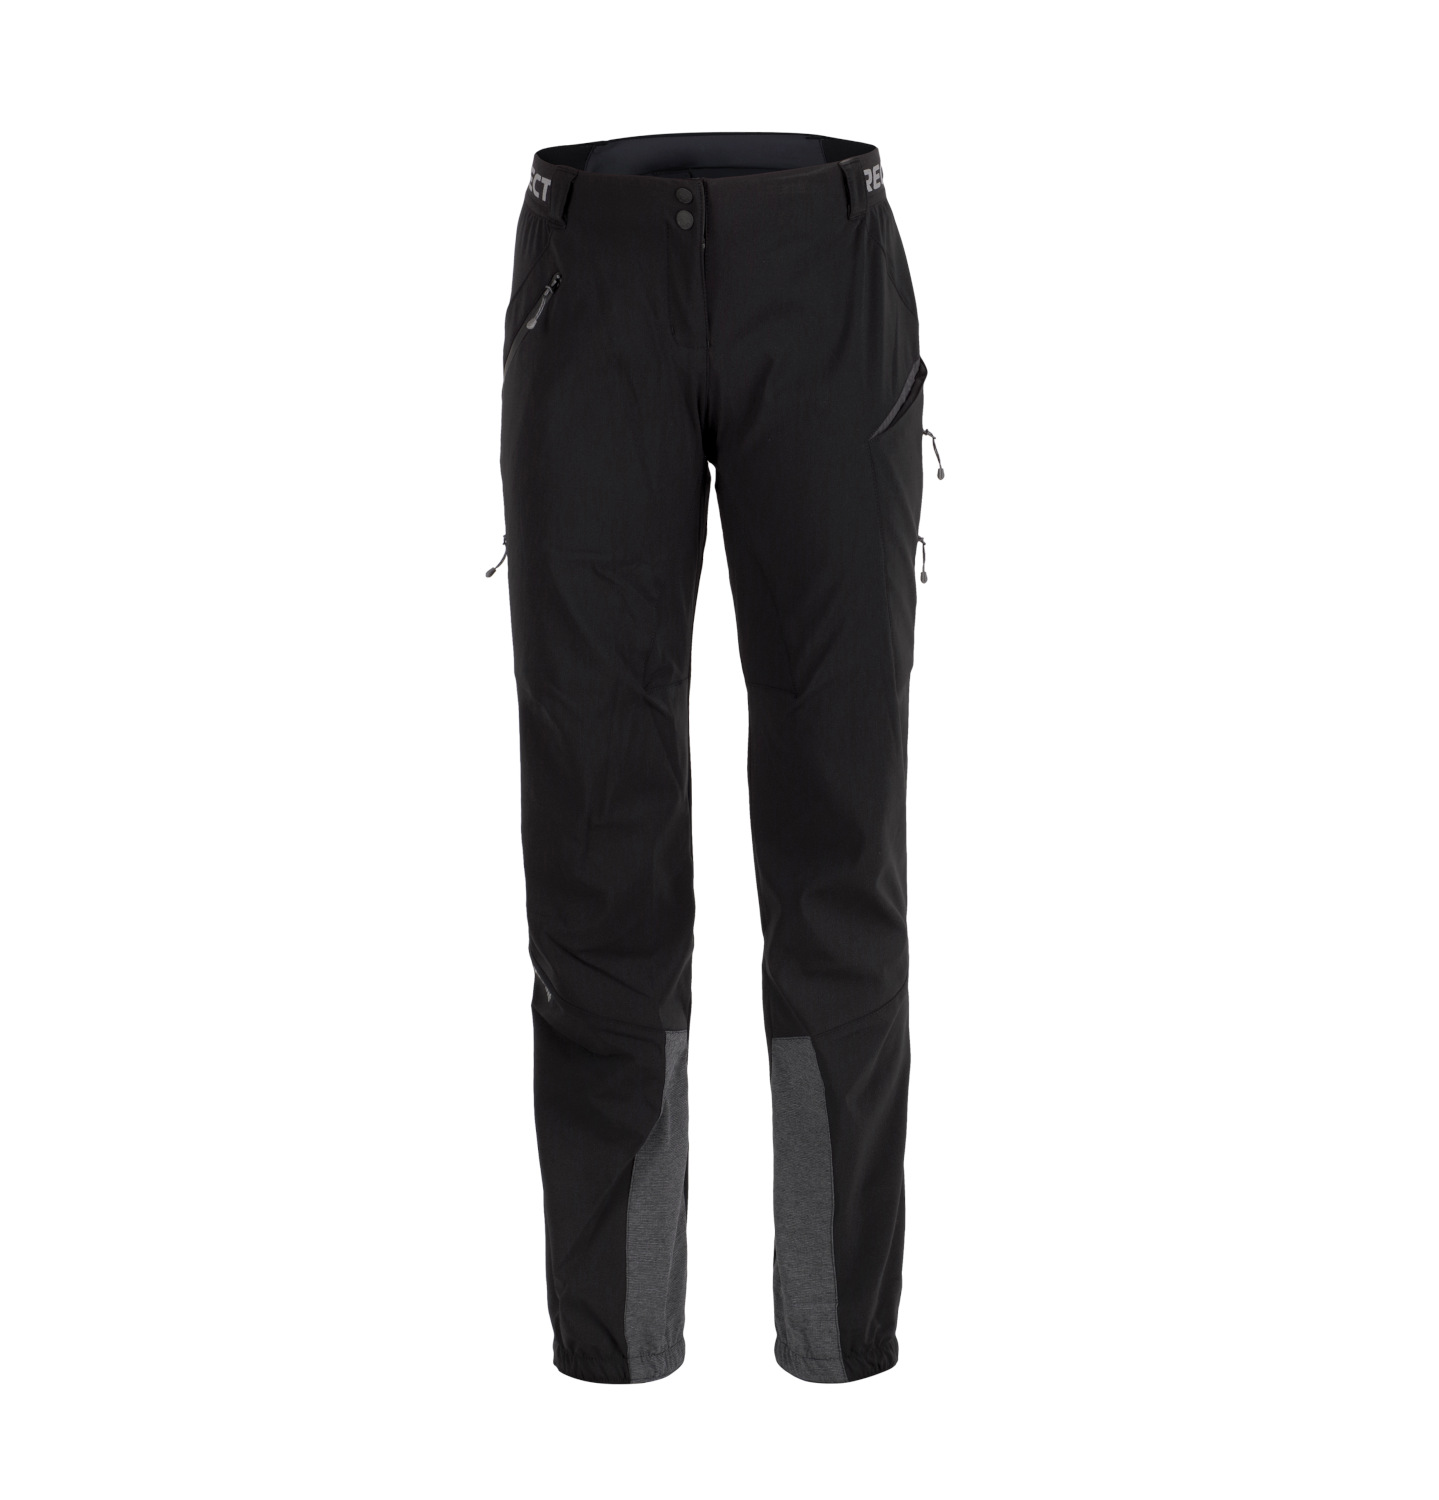 Dámské zimní funkční kalhoty Direct Alpine REBEL LADY 1.0 black L